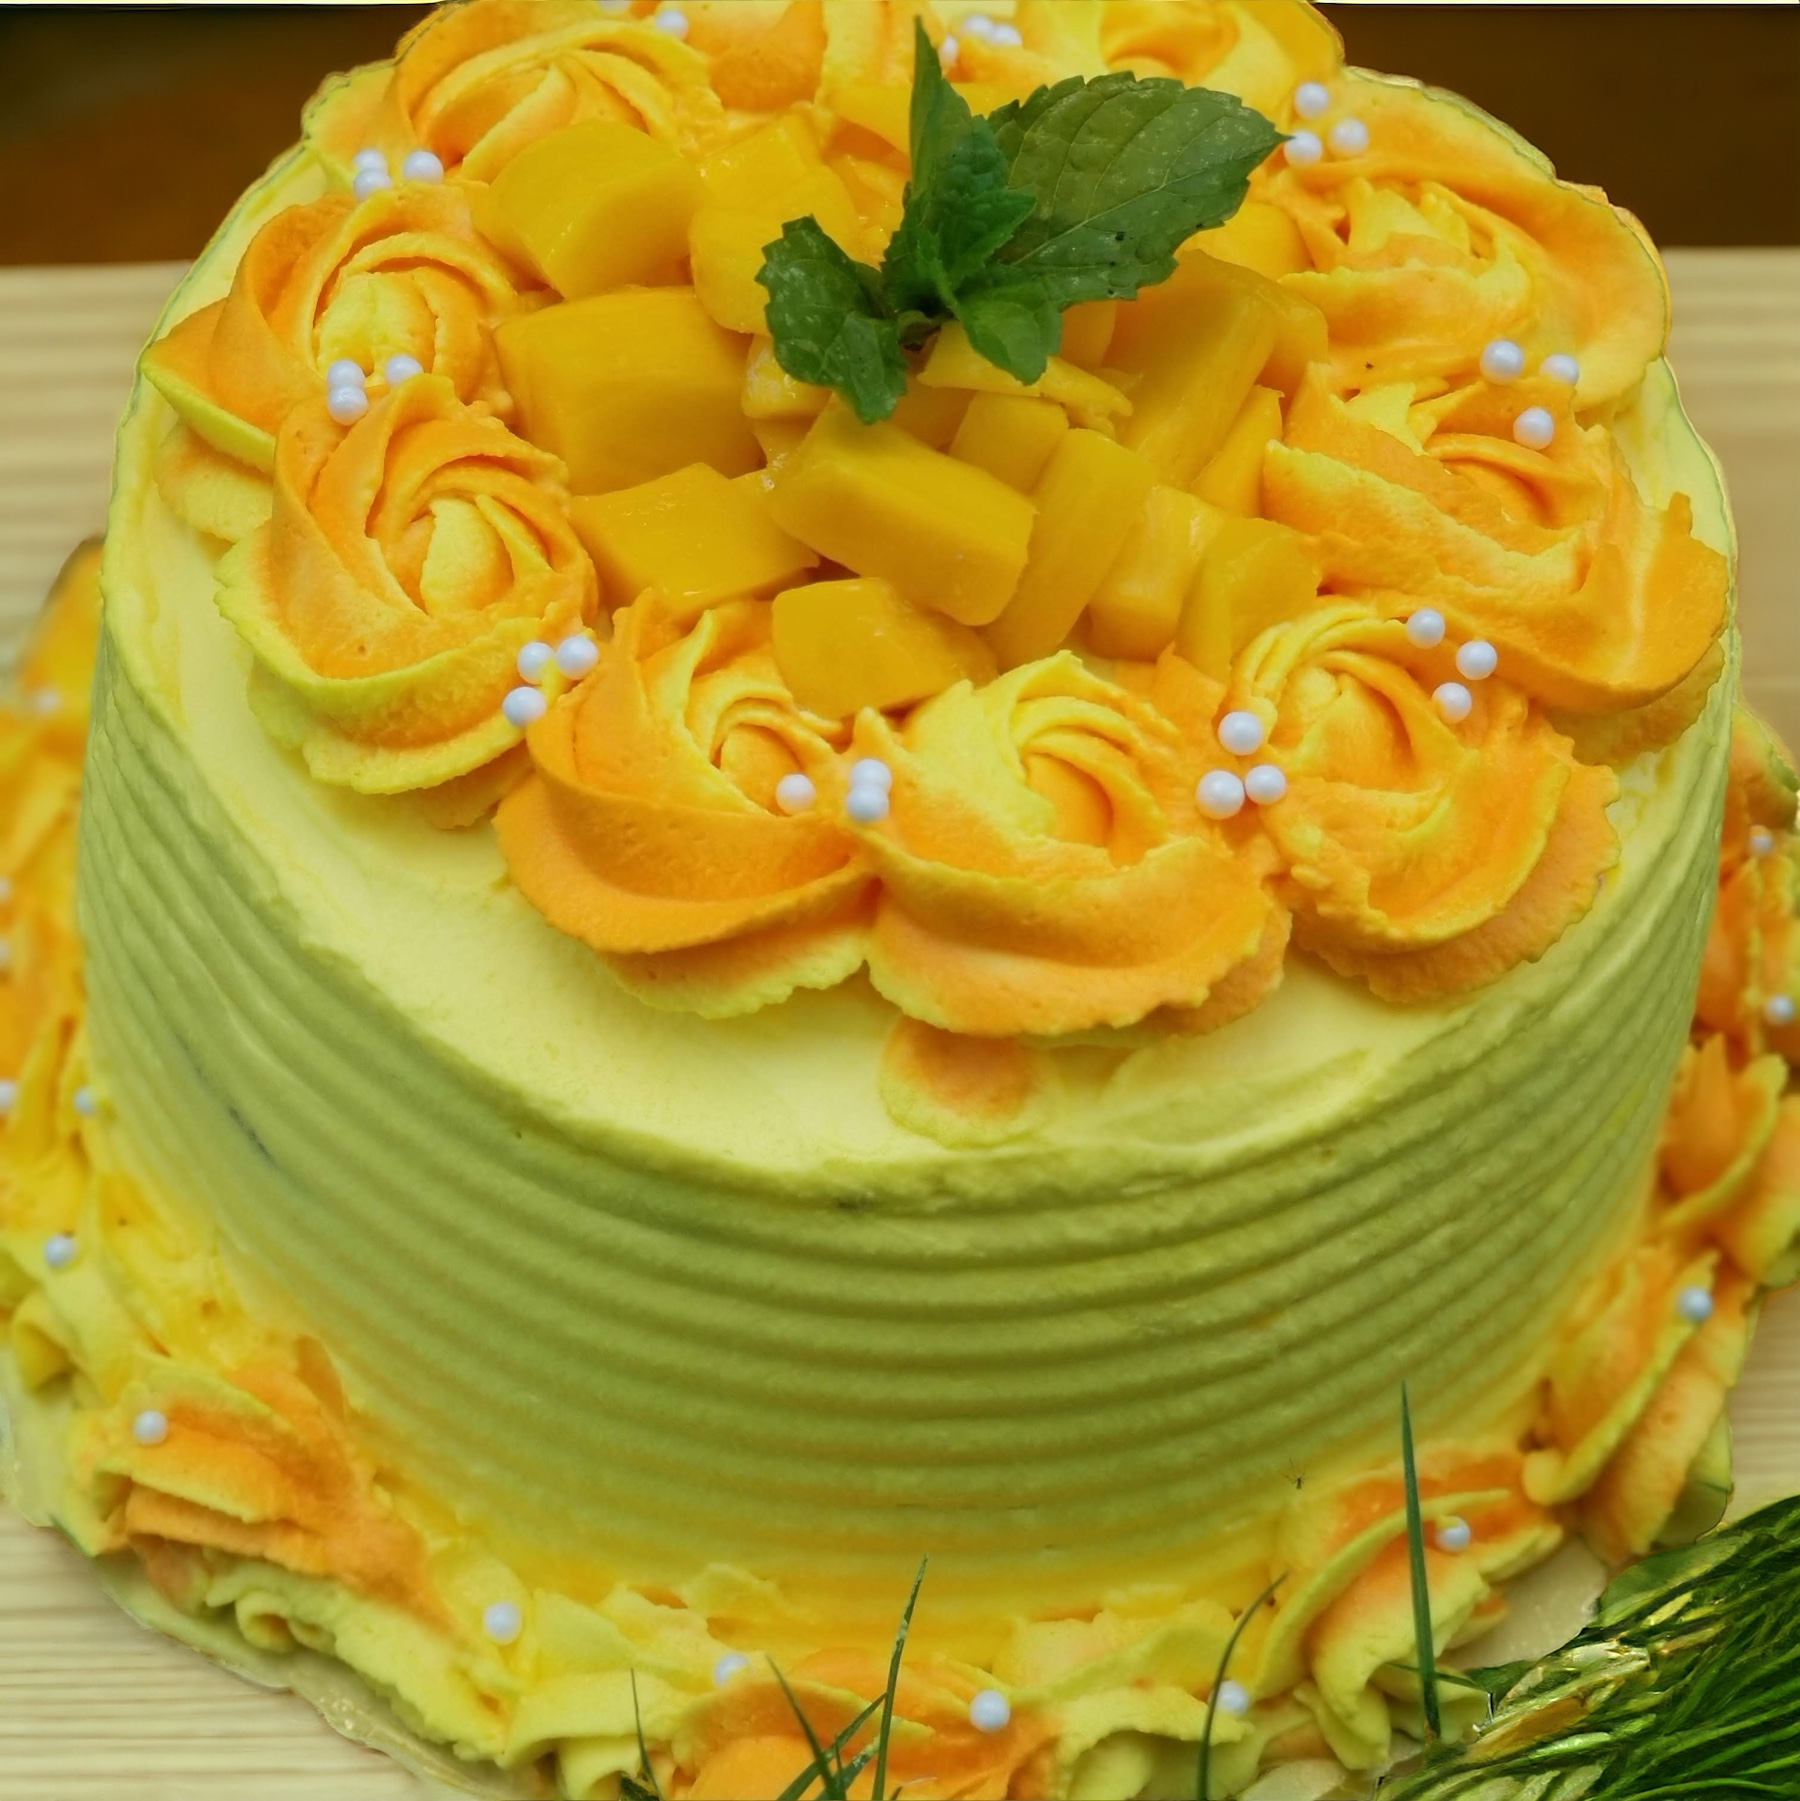 Mango Cake Online Order in Delhi at Best Price | YummyCake